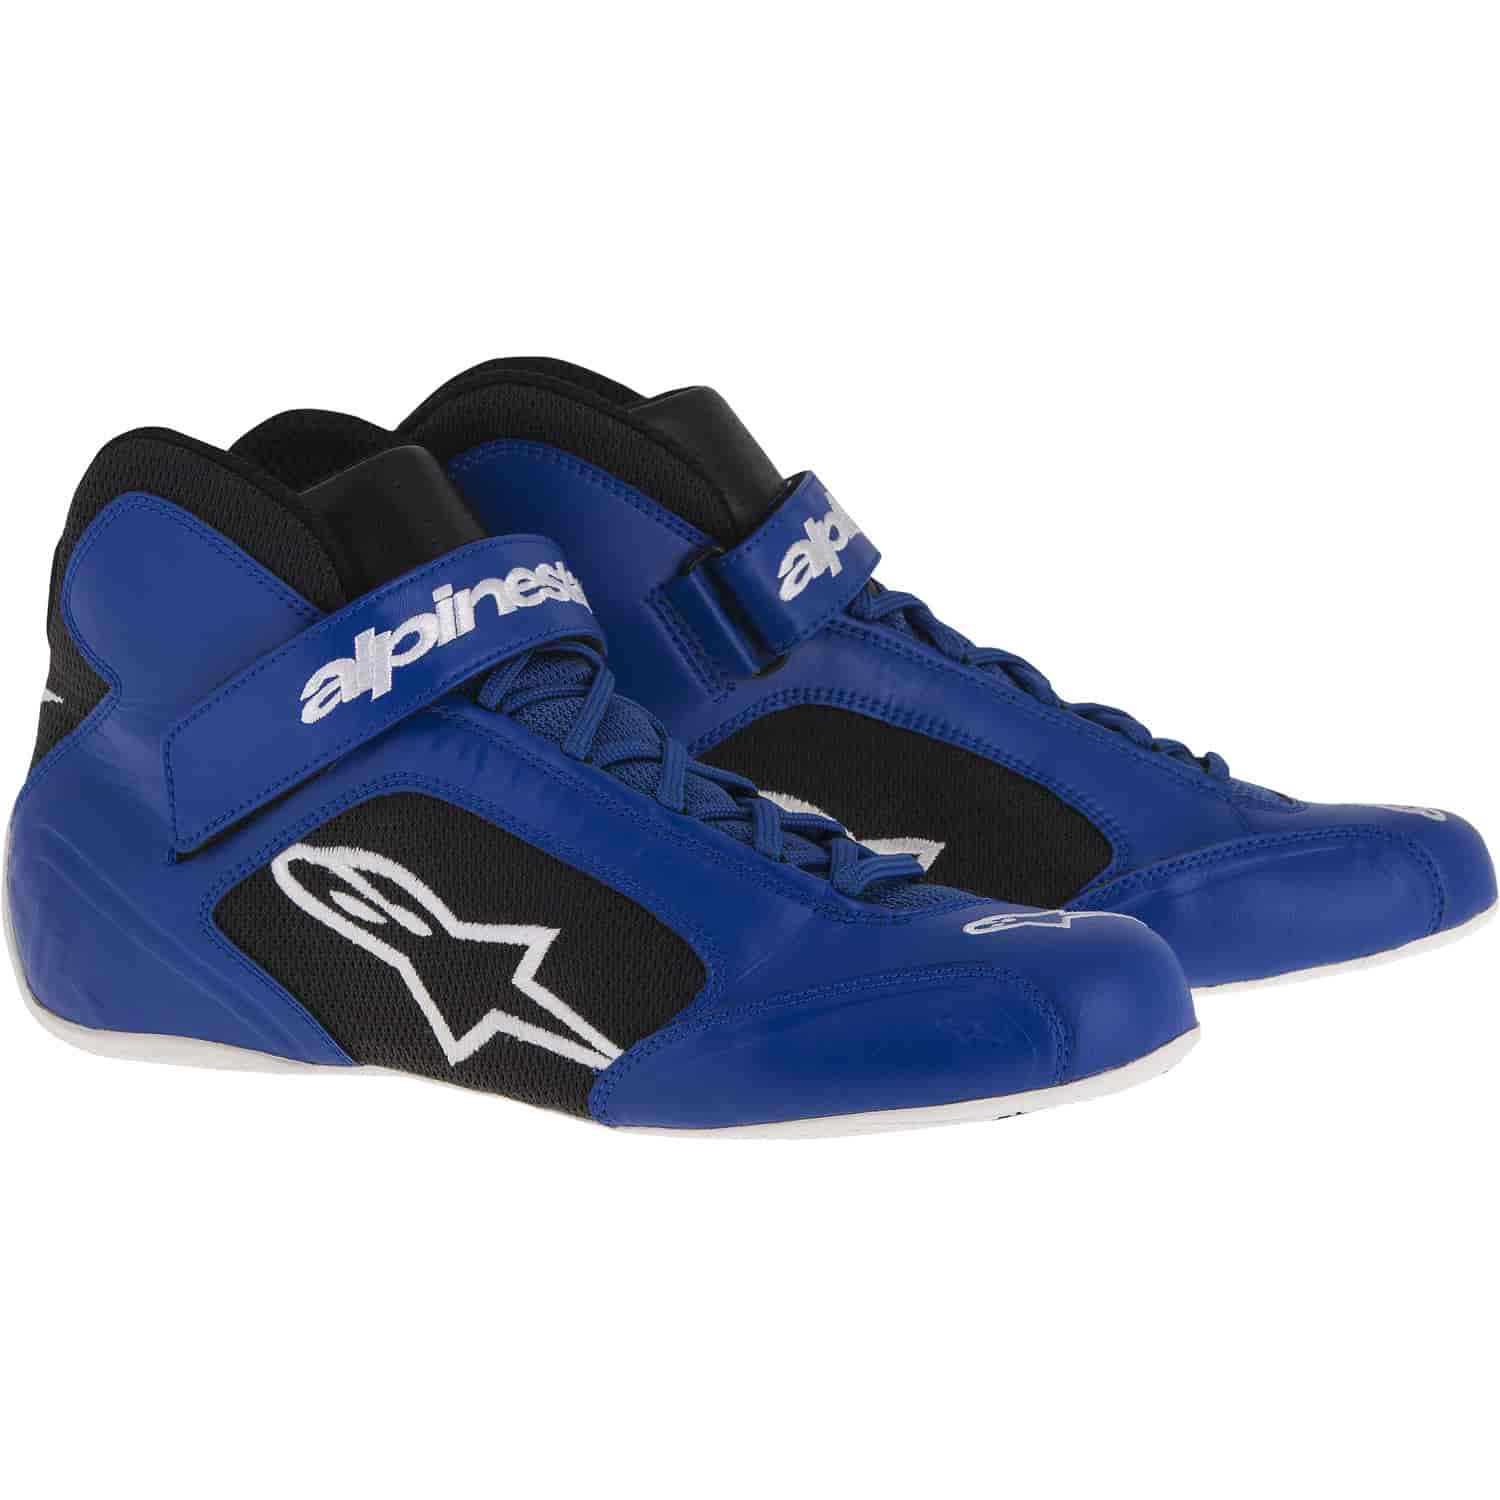 Tech 1-K Shoes Blue/Black/White